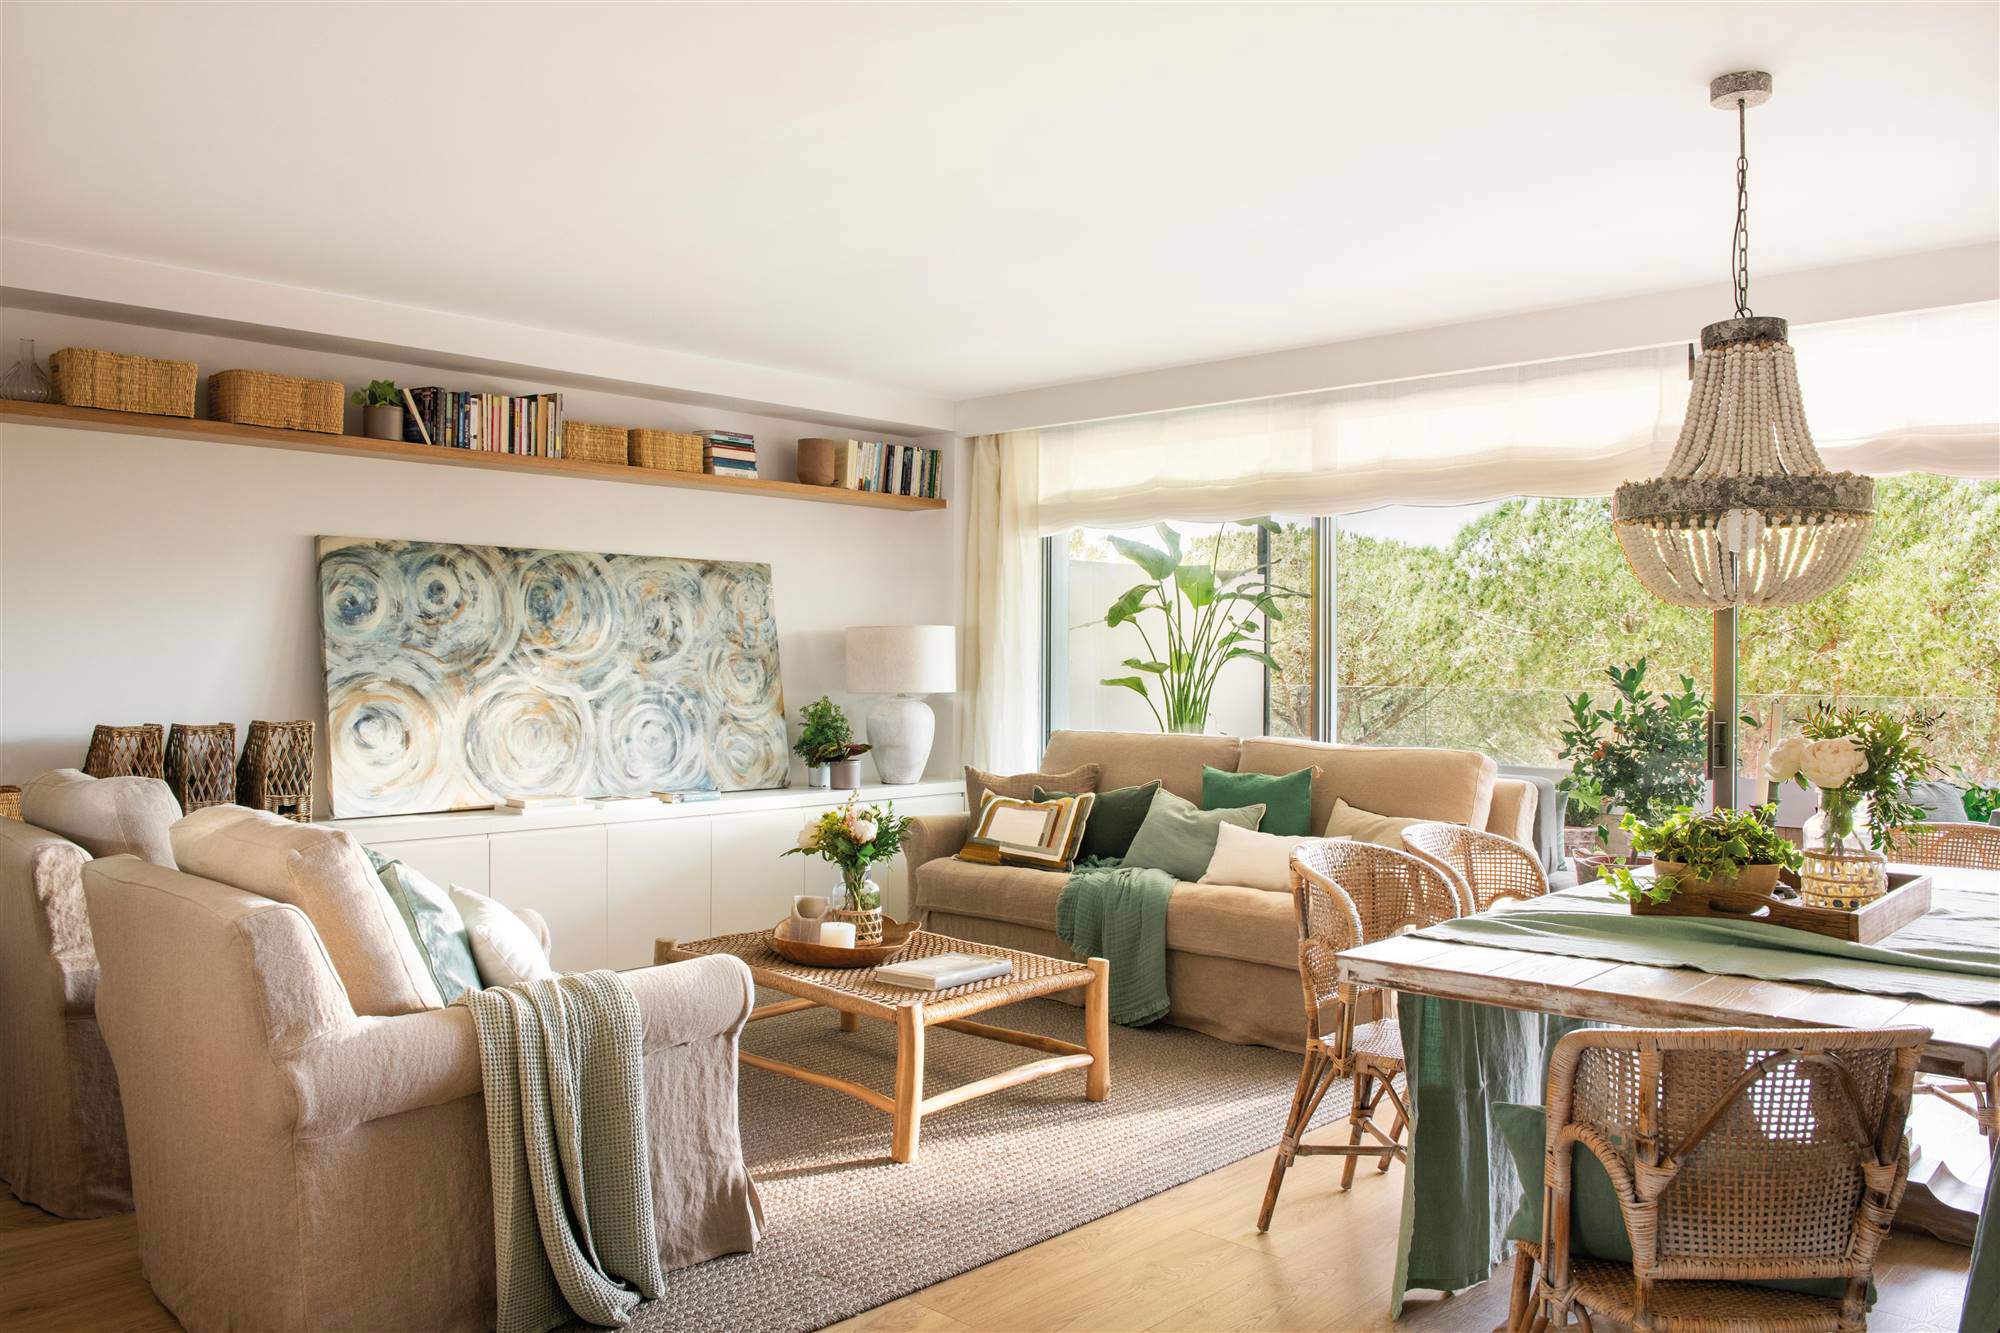 Salón decorado en tonos beis y verdes con muebles de madera y fibra.